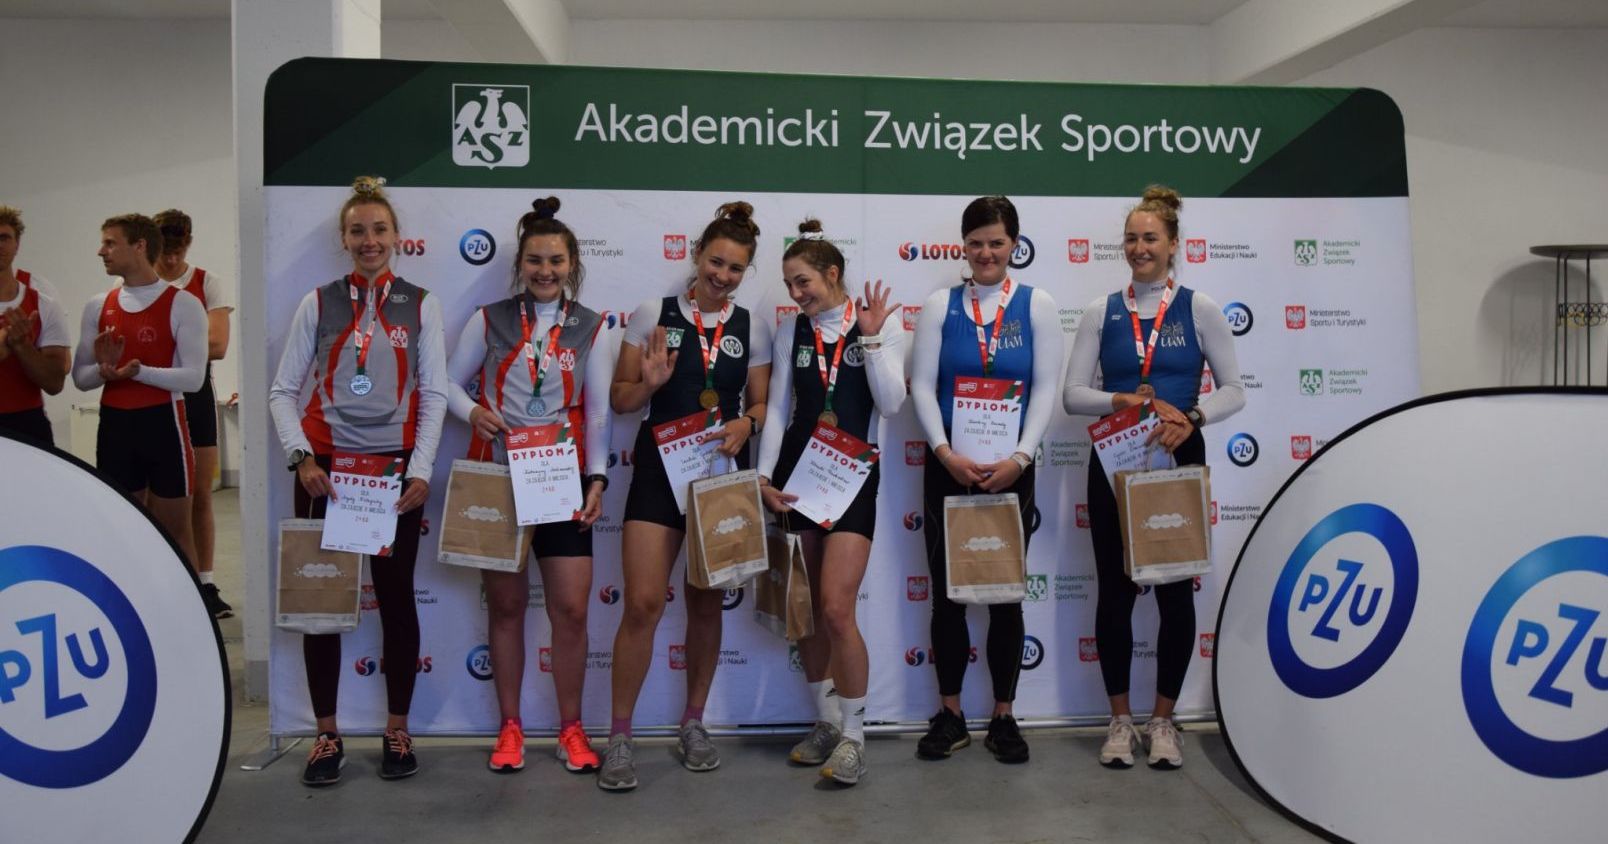 Po lewej stronie stoją Katarzyna Malinowska i Agata Zielepuha, srebrne medalistki w konkurencji dwójek podwójnych Sześć osób pozuje przed ścianką z napisem "Akademicki Związek Sportowy"